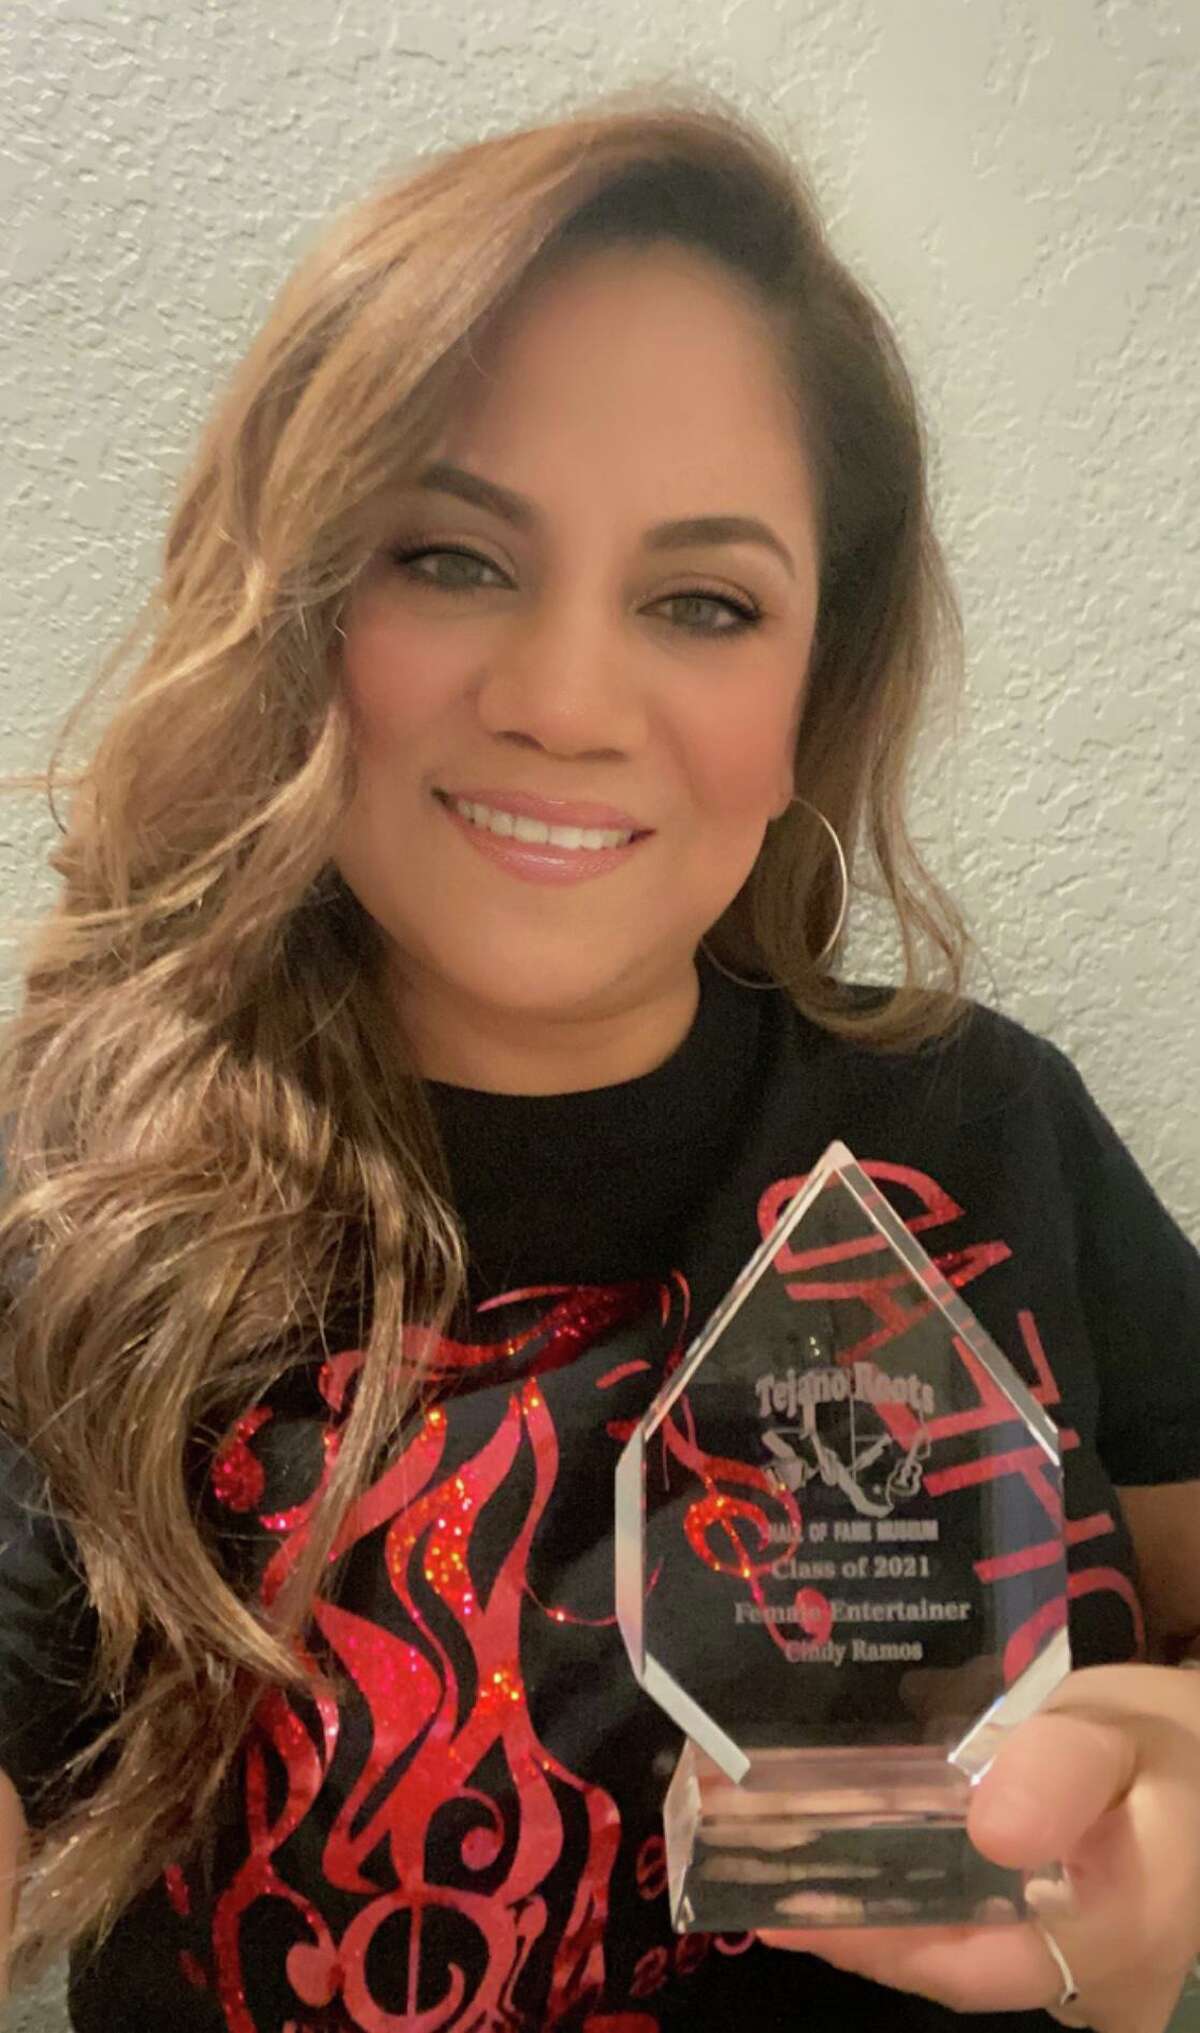 Cindy Ramos, posa para una fotografía con el premio que la reconoce como parte del Tejano Roots Hall of Fame.